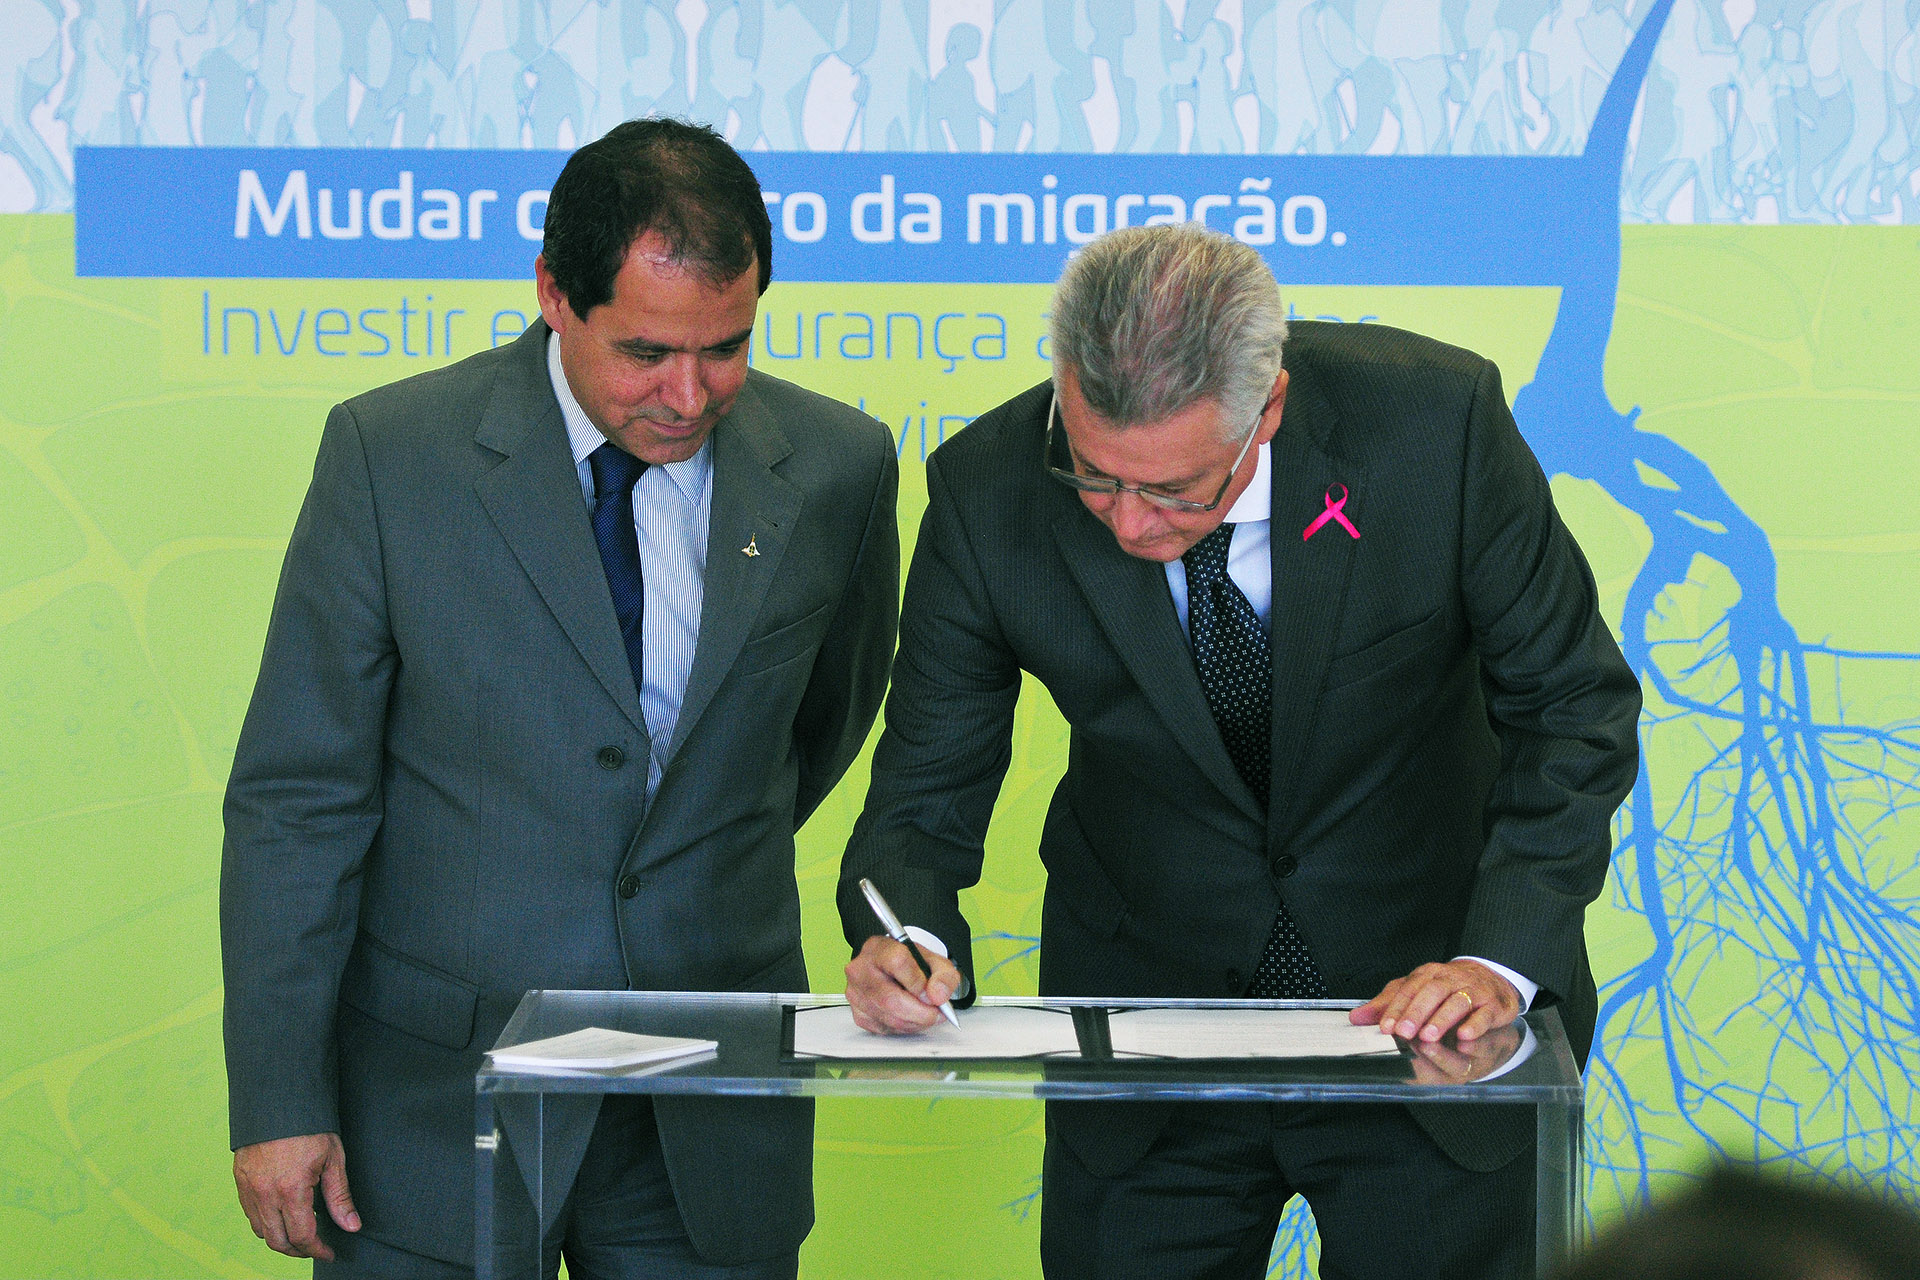 Decreto assinado nesta terça (10) pelo governador Rodrigo Rollemberg estabelece parcela mínima para compra de produtos de produtores locais e do Entorno.